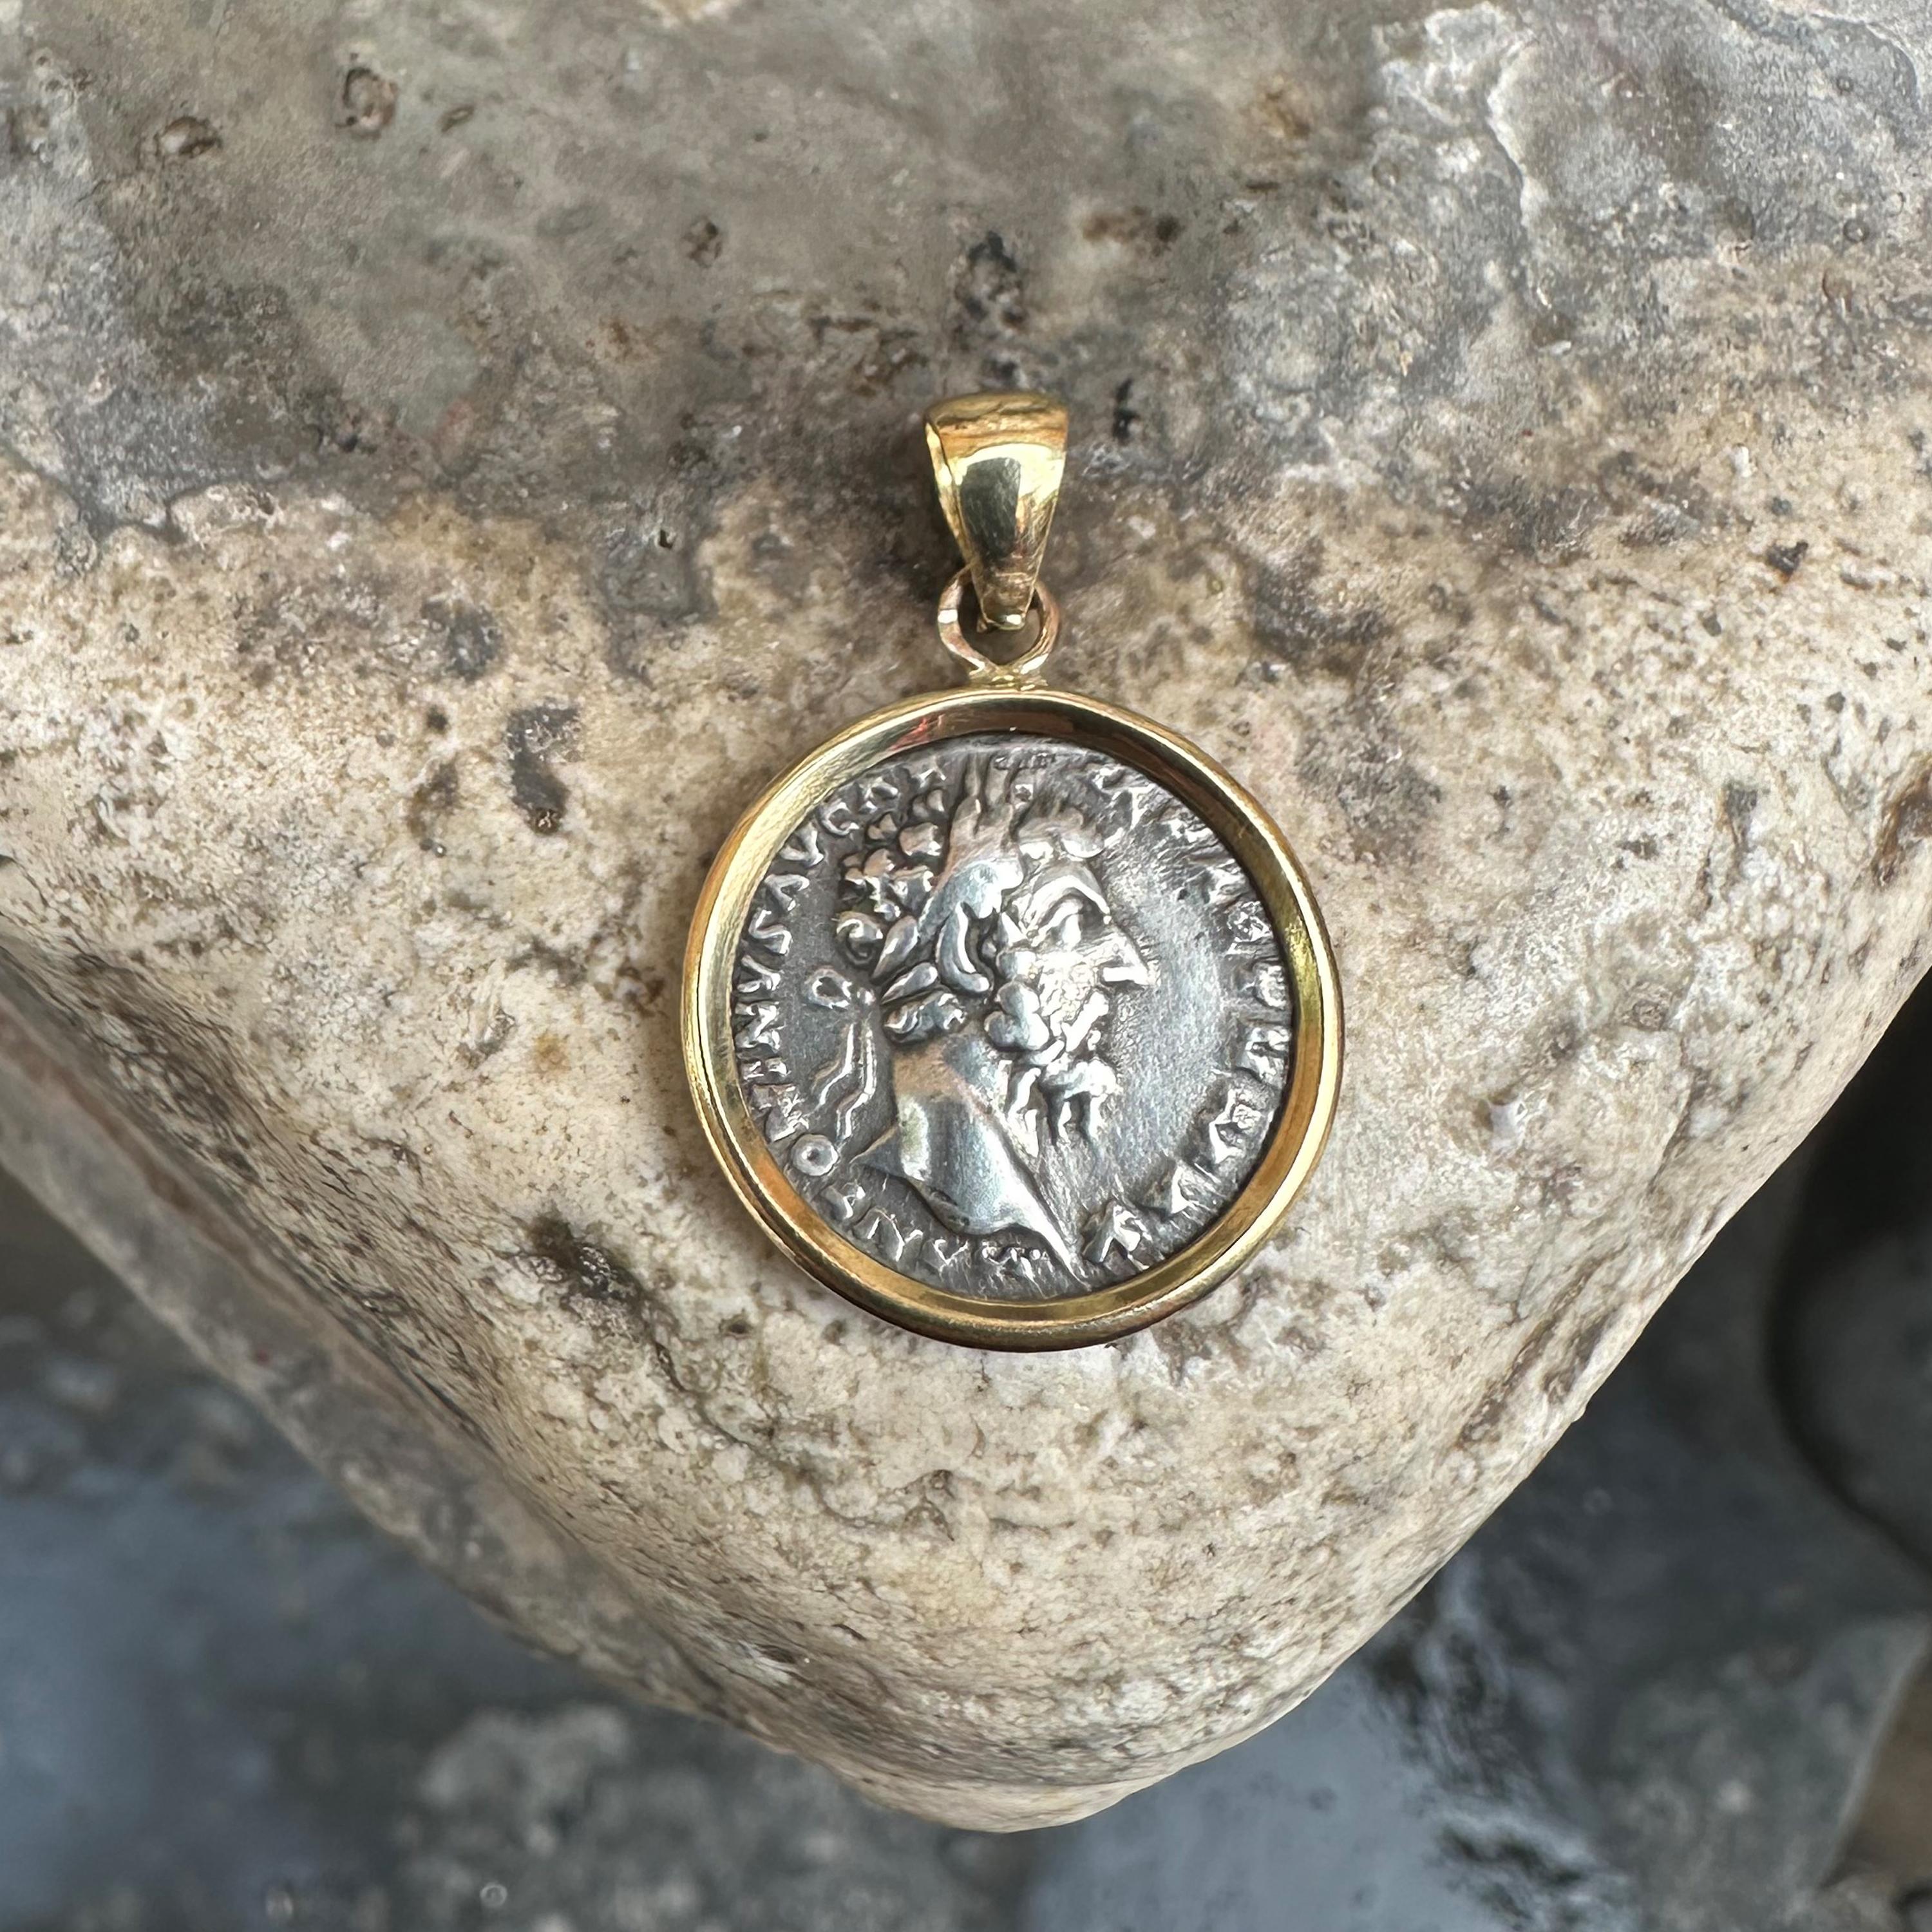 <p>Ce pendentif exquis est orné d'une pièce de monnaie romaine originale datant du IIe siècle ADS, à l'effigie de l'empereur Marc Aurèle. Réalisée en or 18 carats, elle témoigne de la beauté intemporelle et de l'importance historique de l'art romain